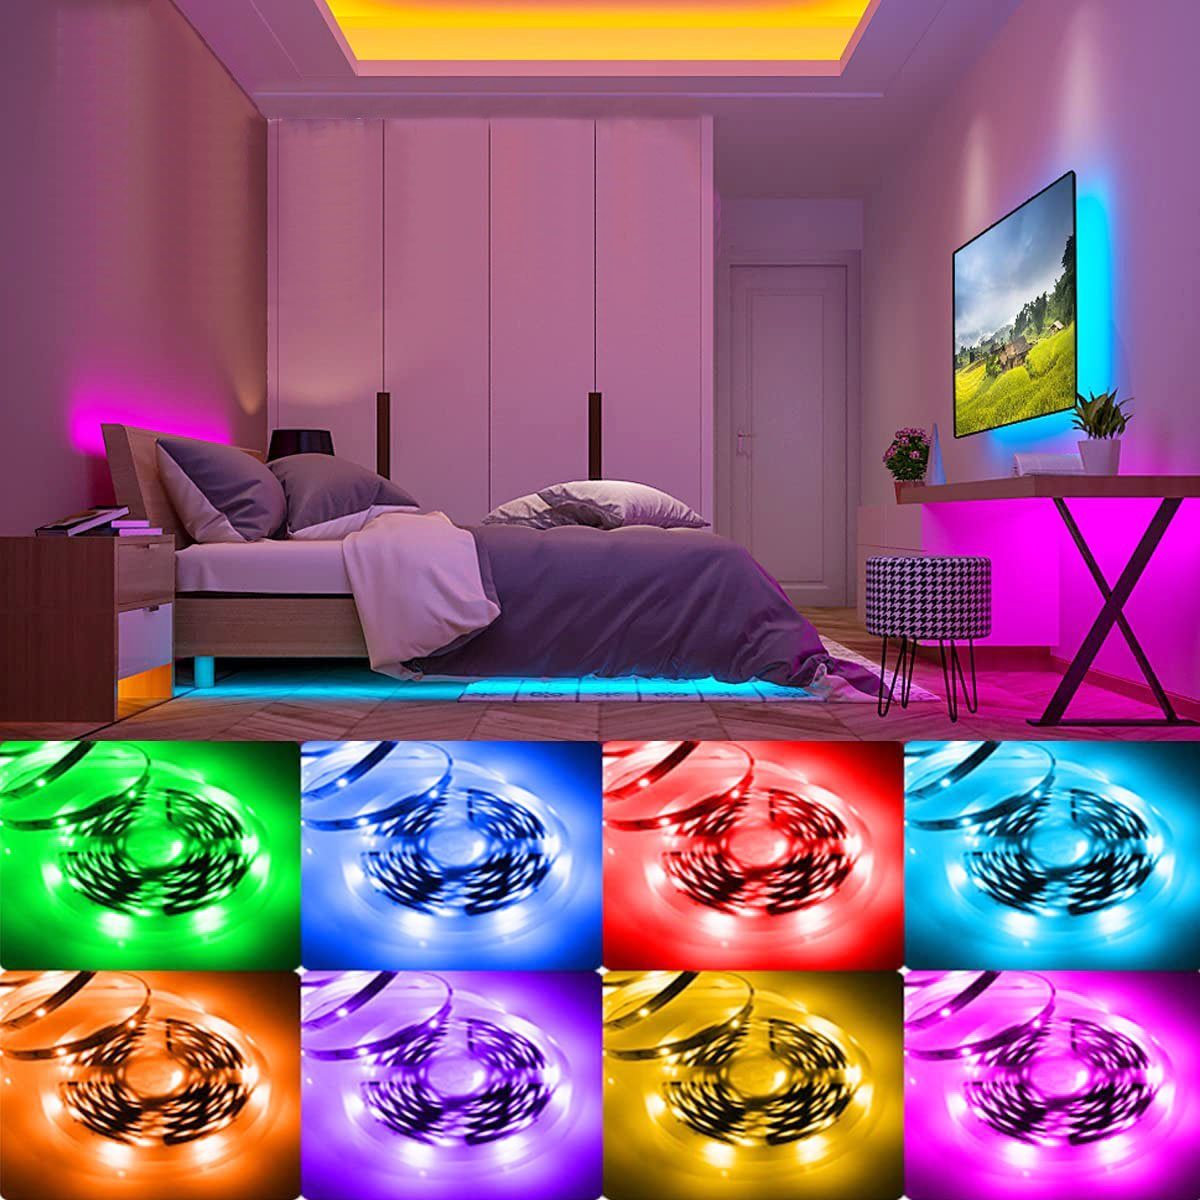 oyajia LED-Streifen mit LEDs Fernbedienung, mit Millionen 16 - LED-Lichterketten, RGB LED-Streifen Farben Streifen Strip 5050 1m 5m/2m 30 LED IR